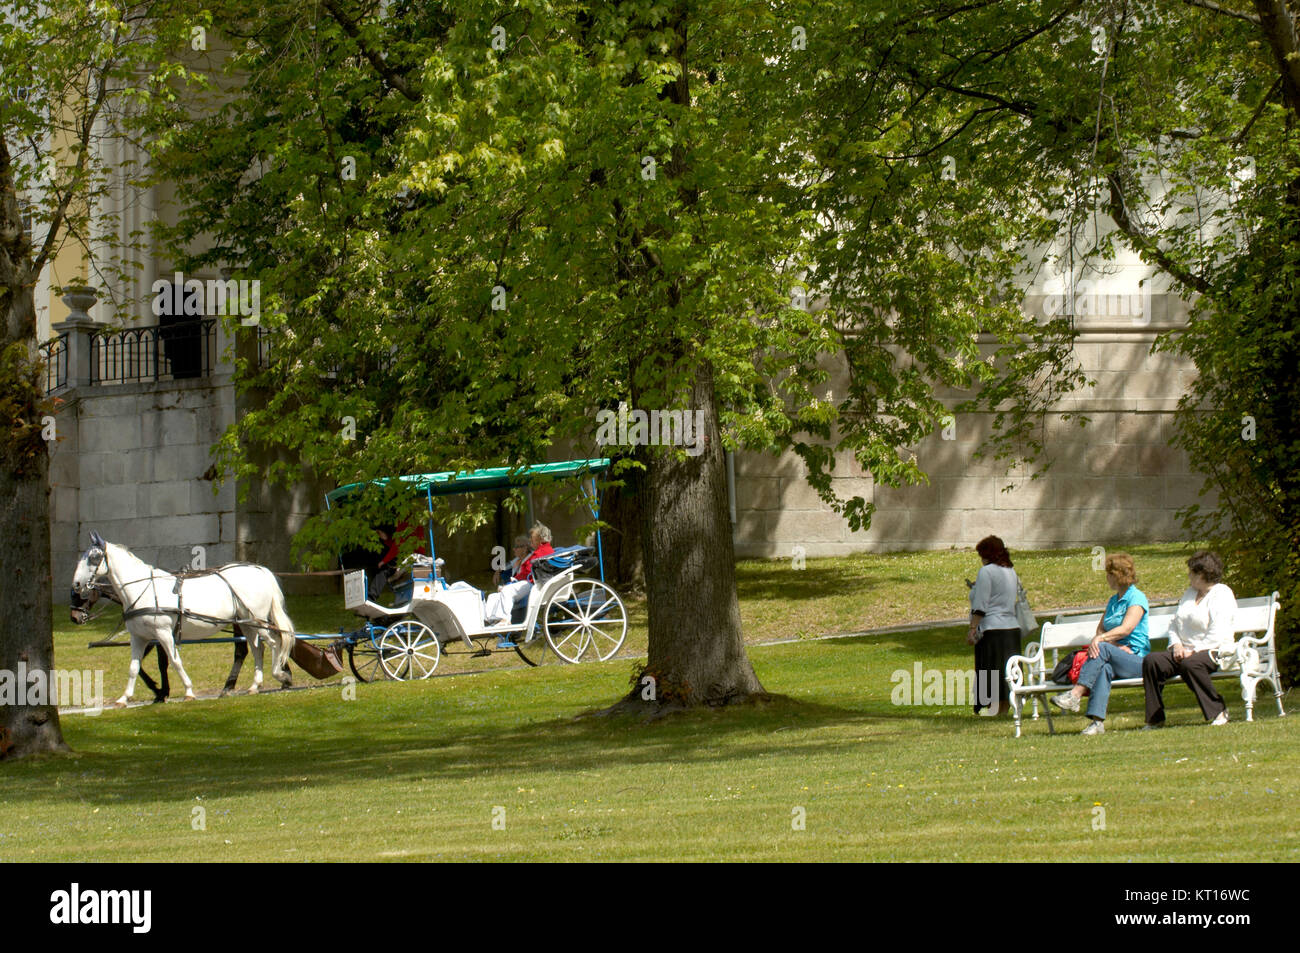 Tschechien, Bˆhmen : Marienbad, Kutschen im Kurpark, der von Gartenarchitekt Vaclav Skalnikgestaltet wurde. Stock Photo